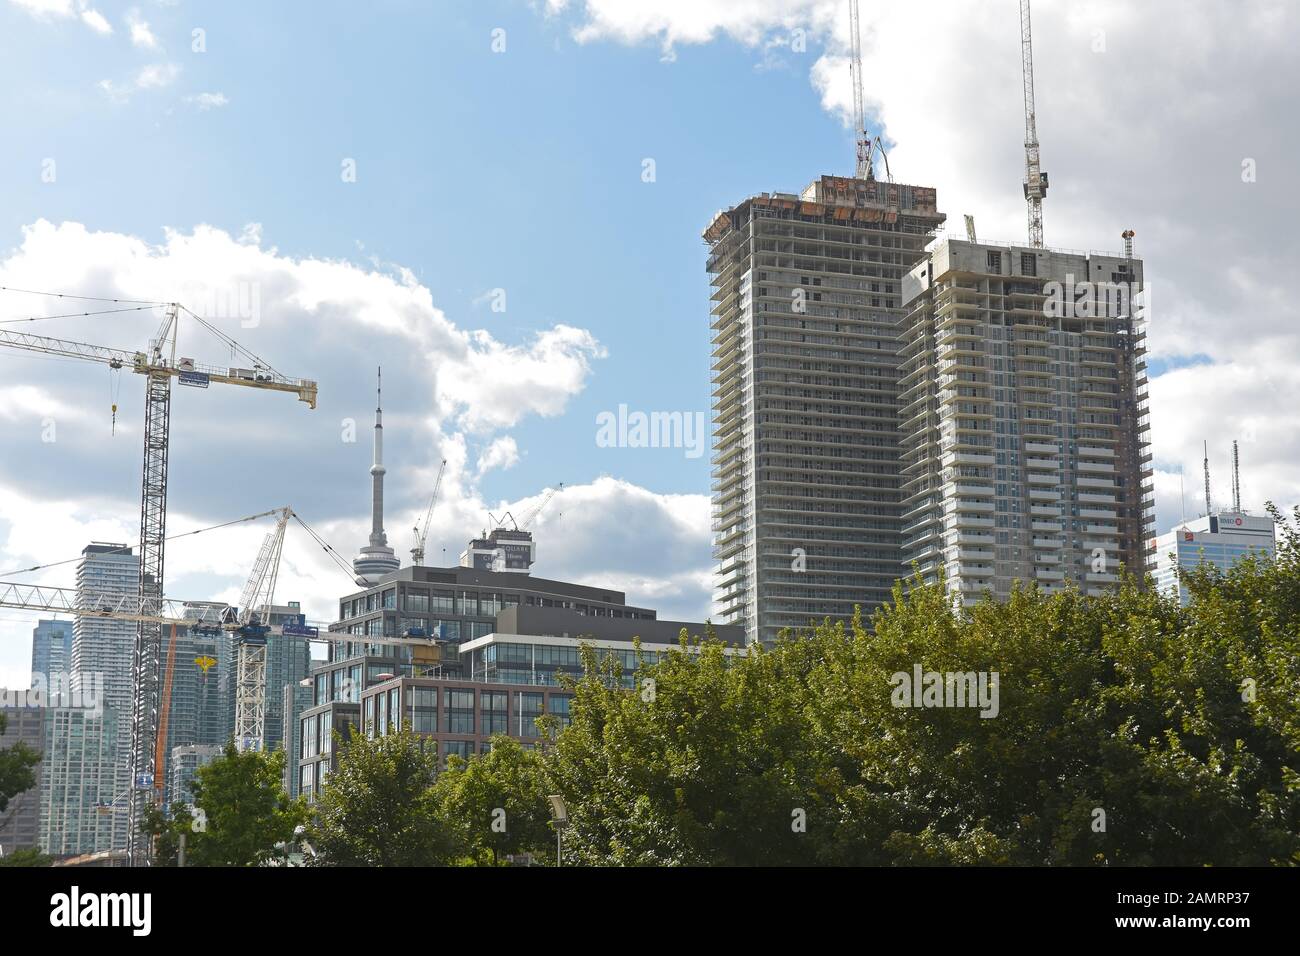 Chantier de construction avec grues en haut d'un bureau ou d'une tour d'appartements à Toronto, Canada Banque D'Images